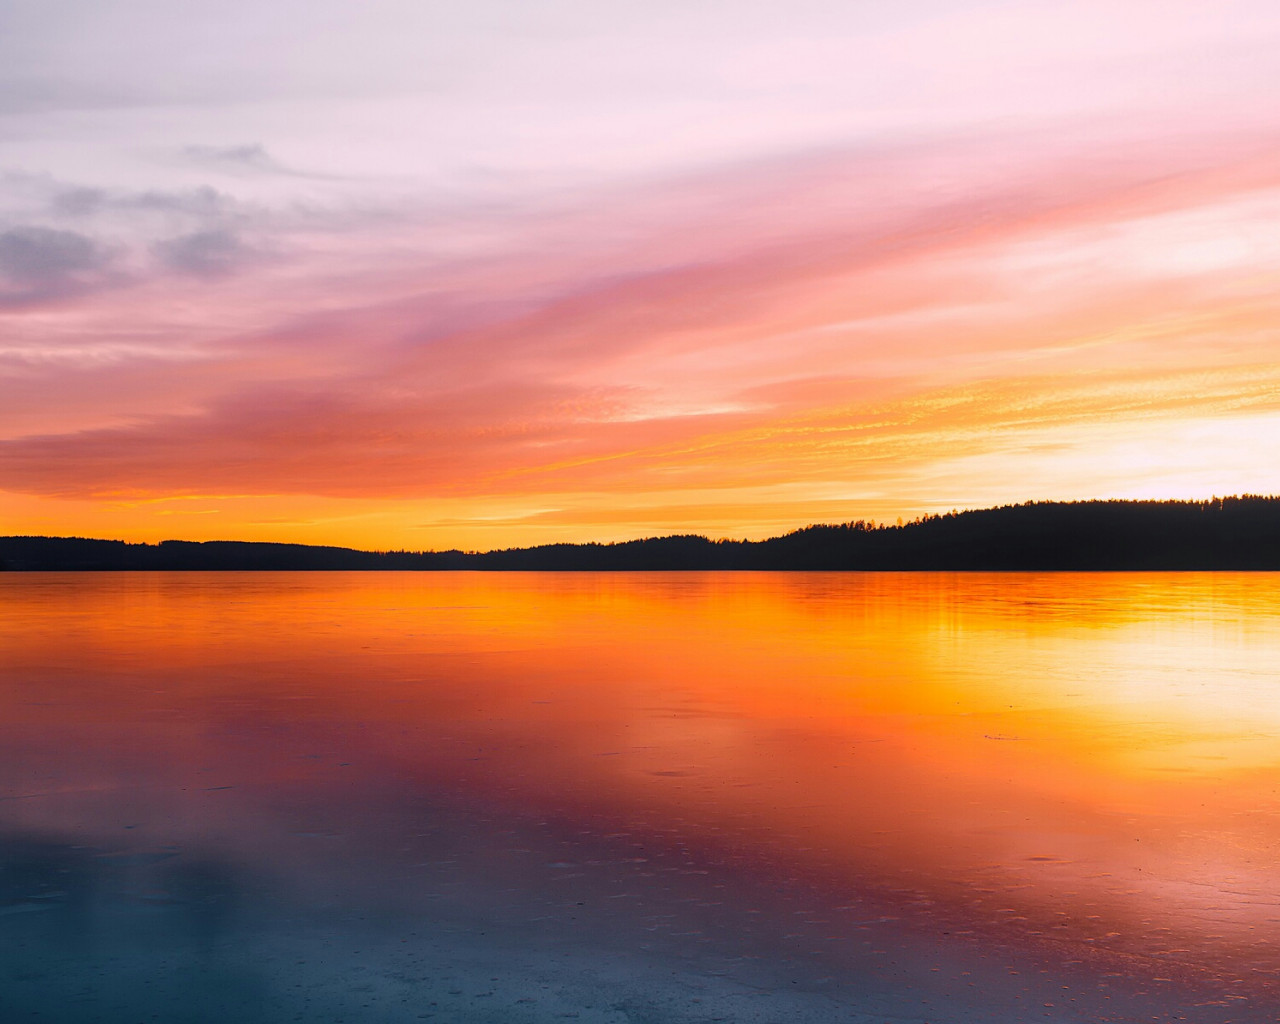 Szwecja i zachód słońca nad jeziorem